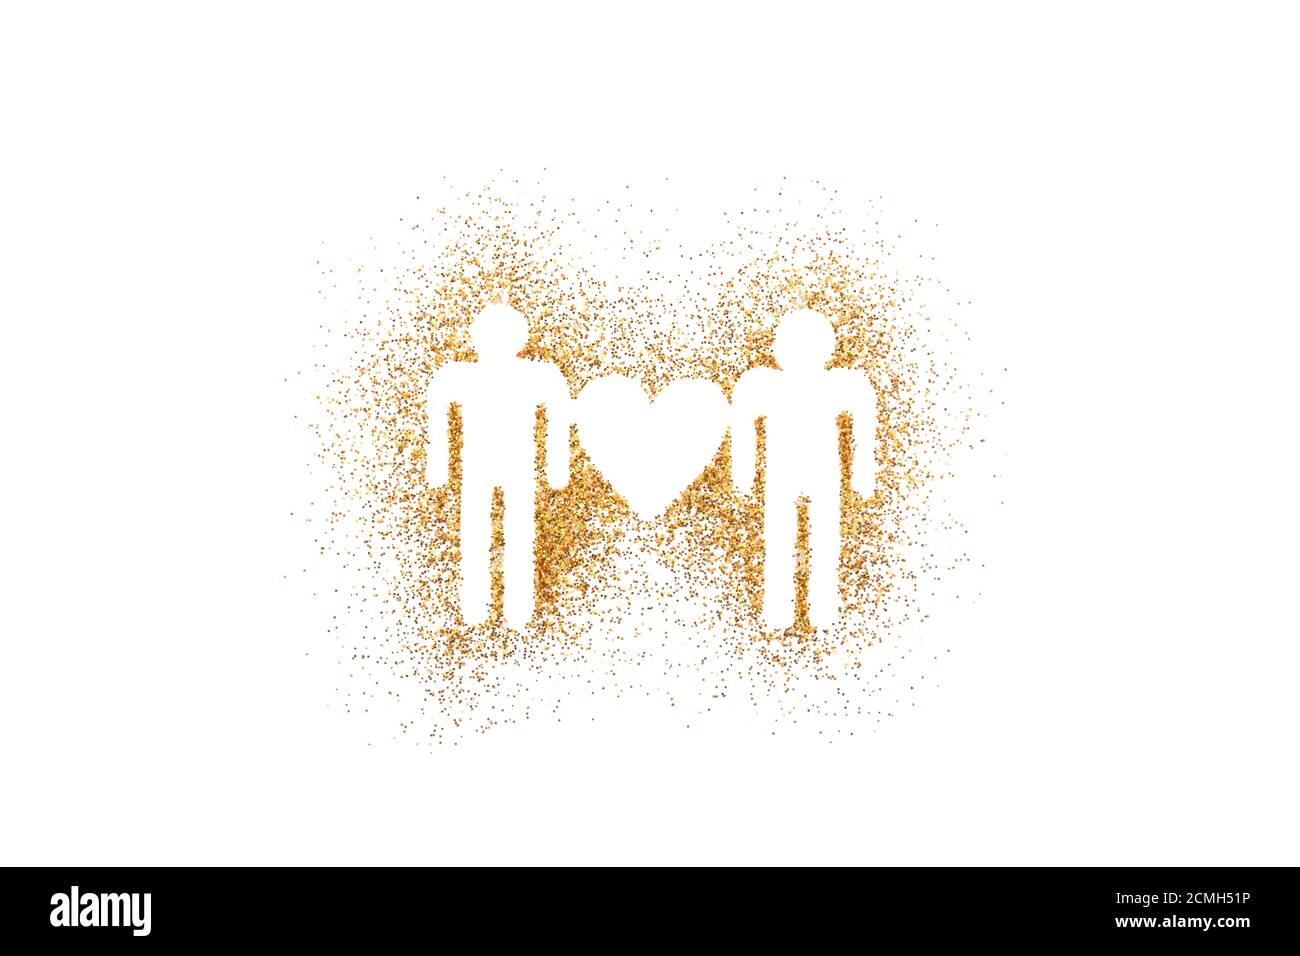 Gli uomini si sono collegati con la forma del cuore su glitter dorato sopra sfondo bianco Foto Stock